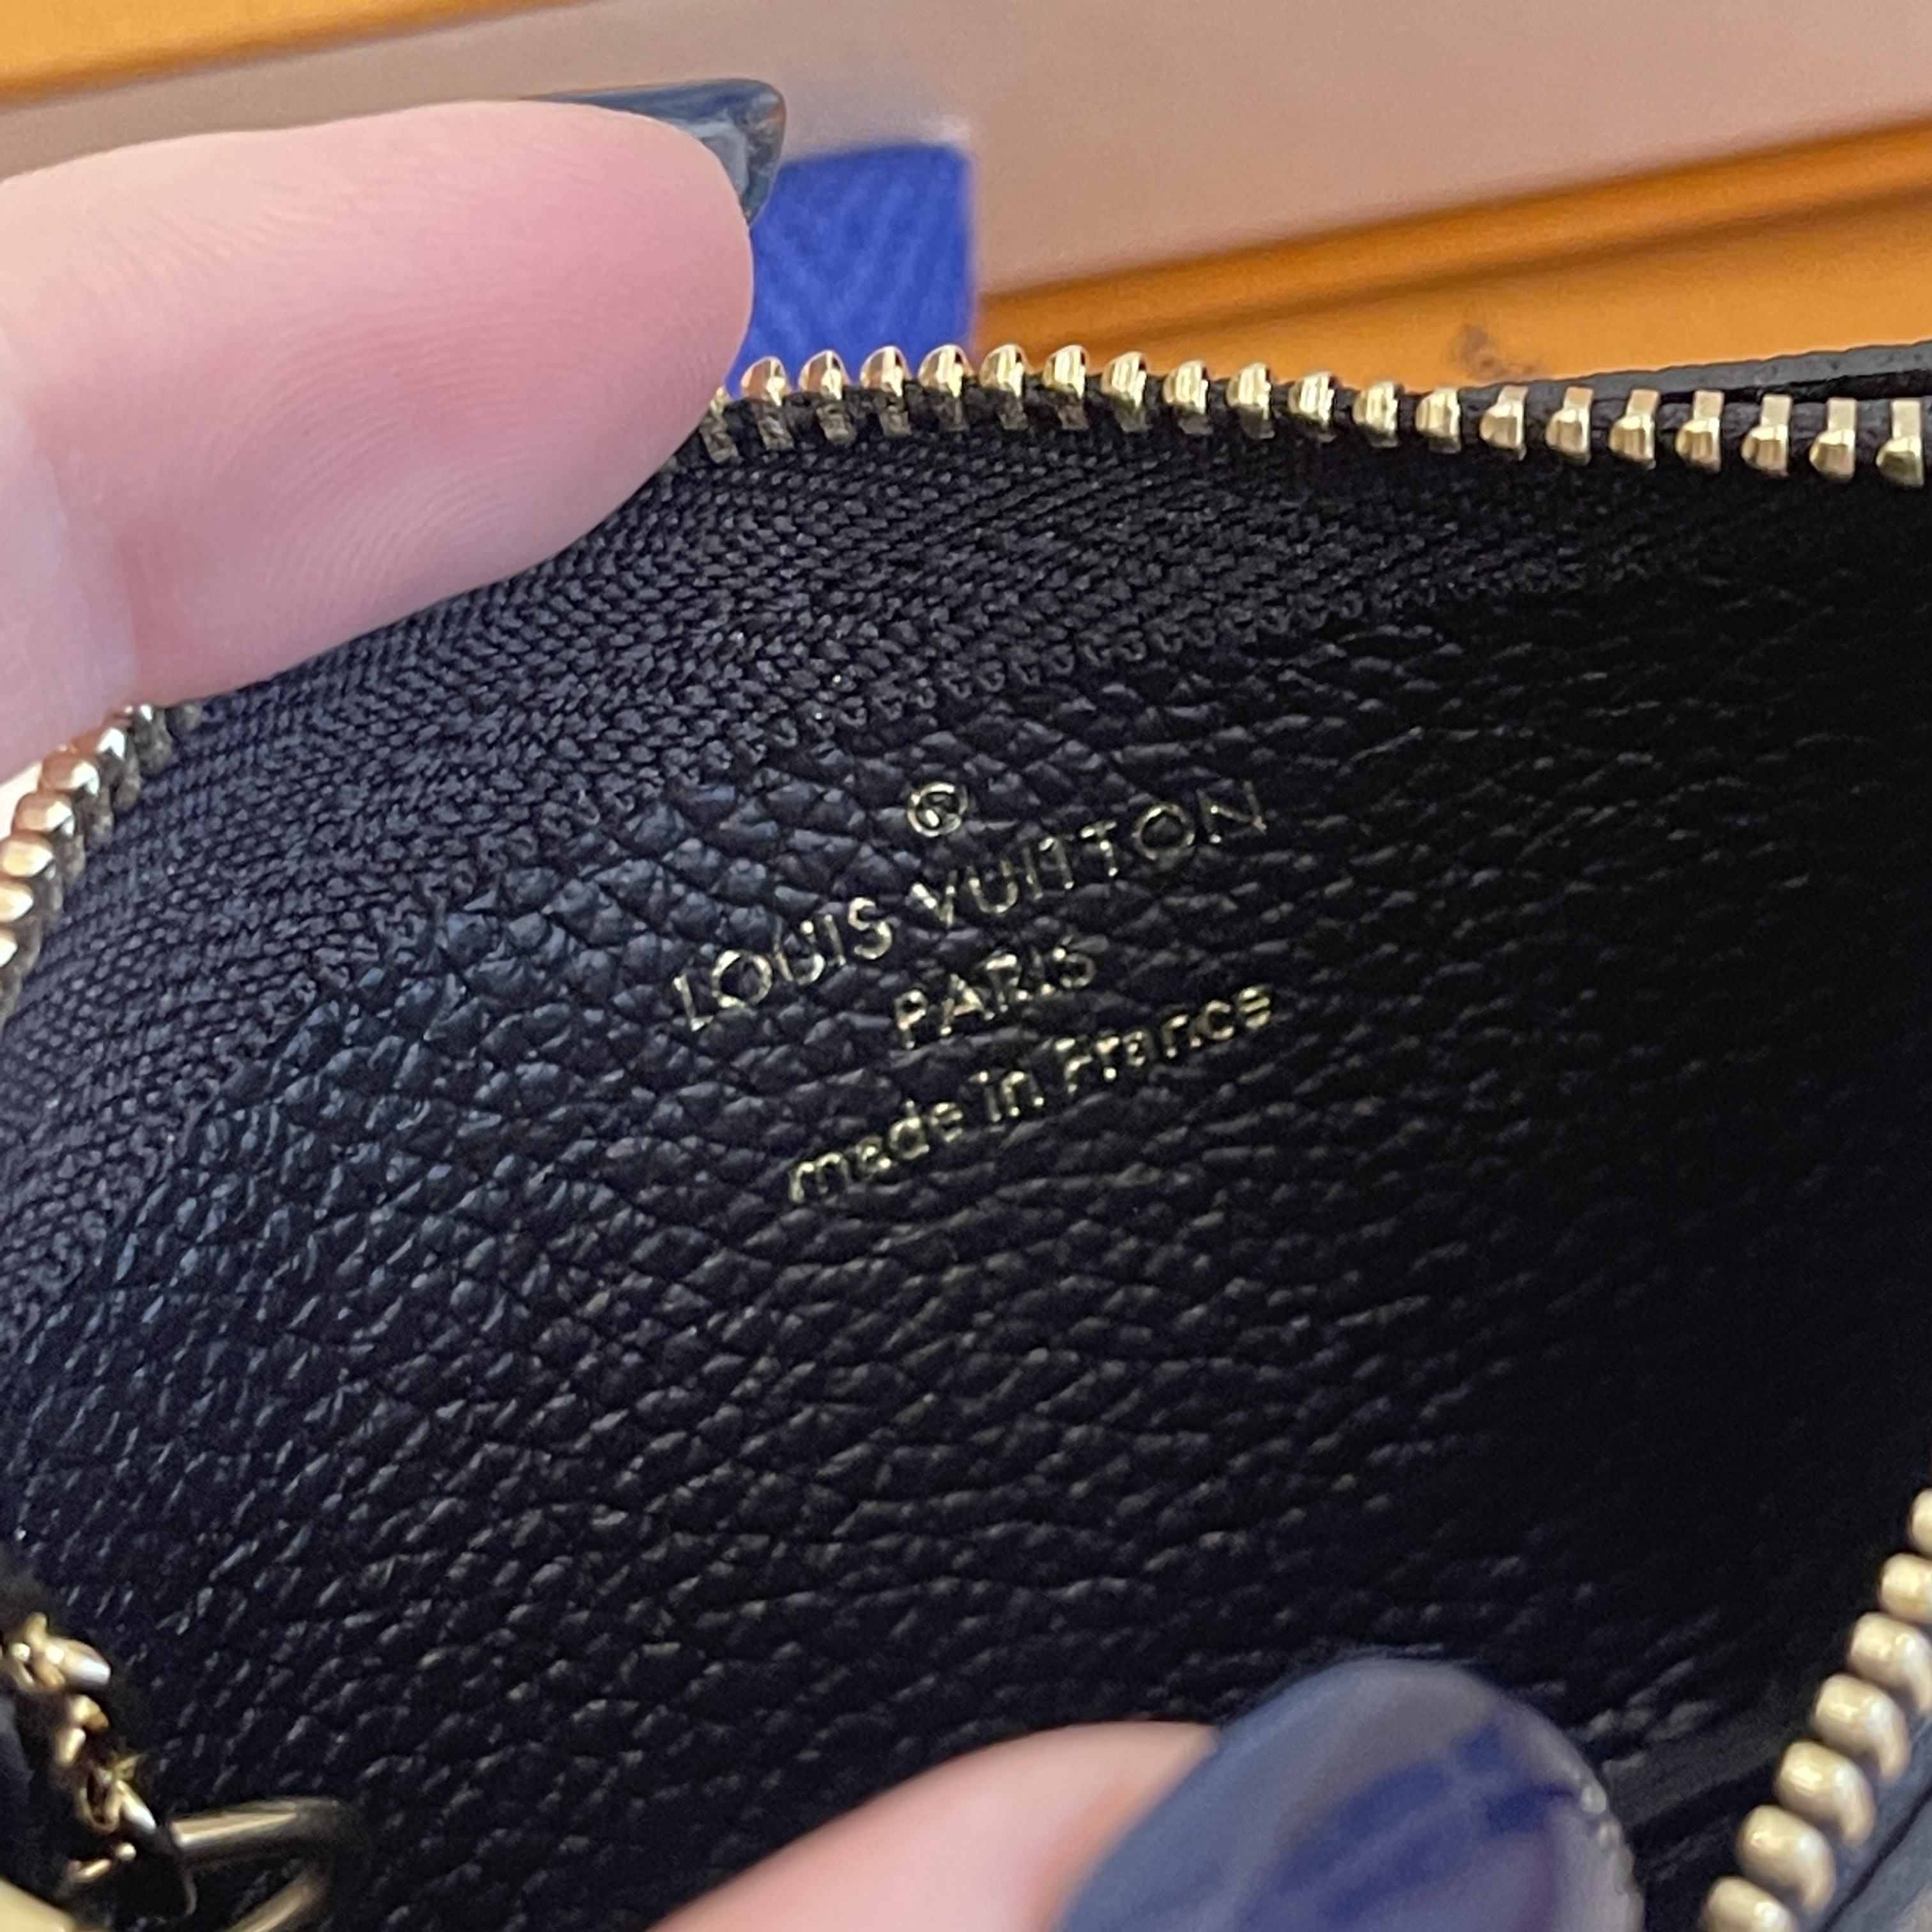 Shop Louis Vuitton Key pouch (M80885) by naganon